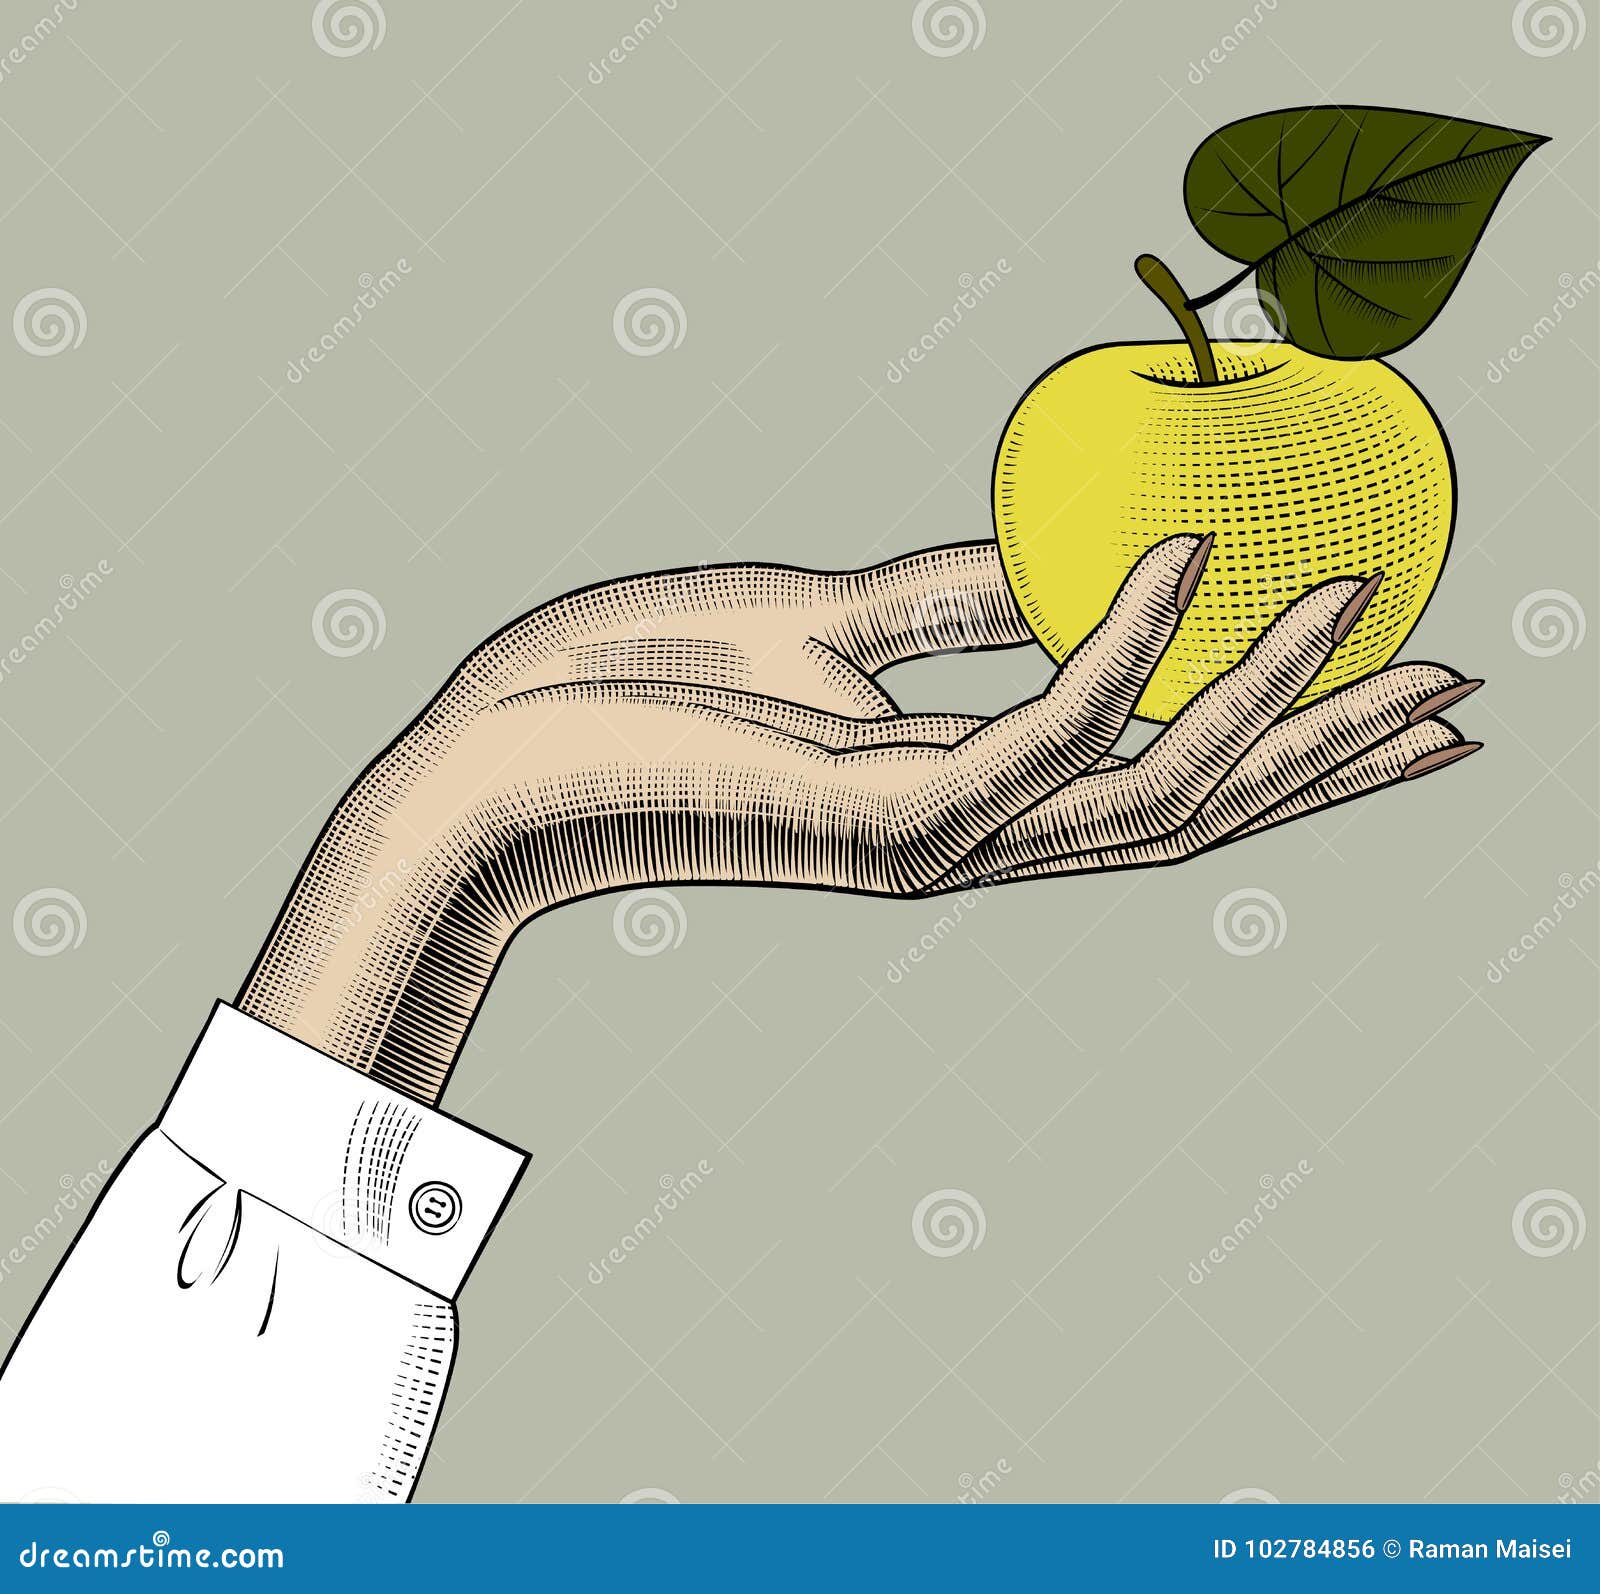 Яблоко в руке рисунок